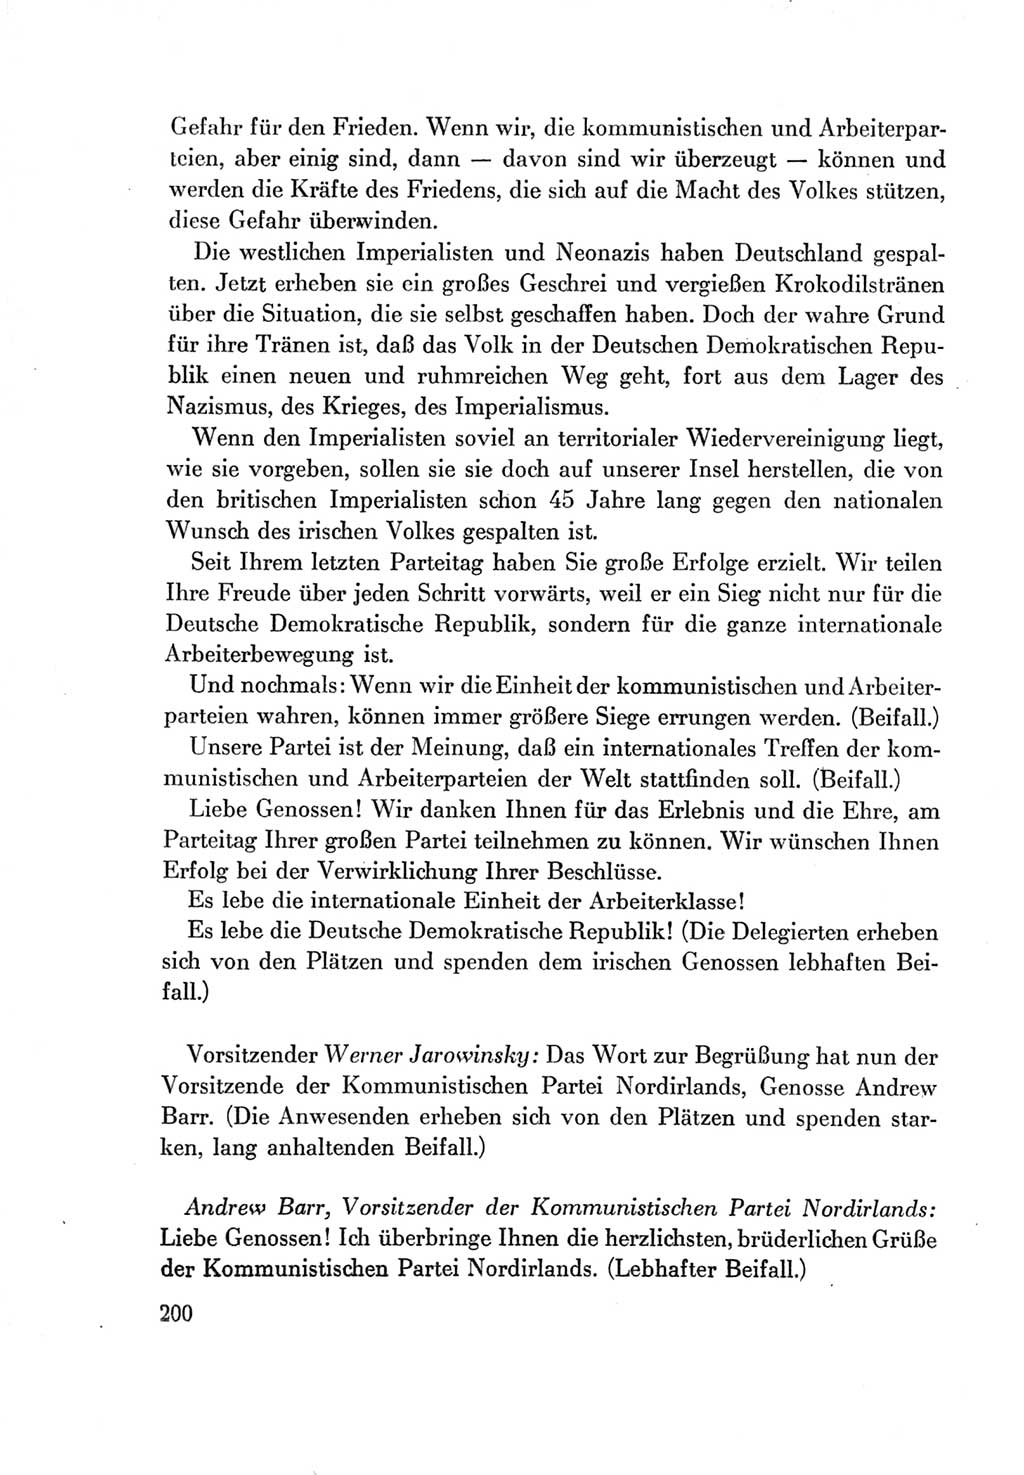 Protokoll der Verhandlungen des Ⅶ. Parteitages der Sozialistischen Einheitspartei Deutschlands (SED) [Deutsche Demokratische Republik (DDR)] 1967, Band Ⅱ, Seite 200 (Prot. Verh. Ⅶ. PT SED DDR 1967, Bd. Ⅱ, S. 200)